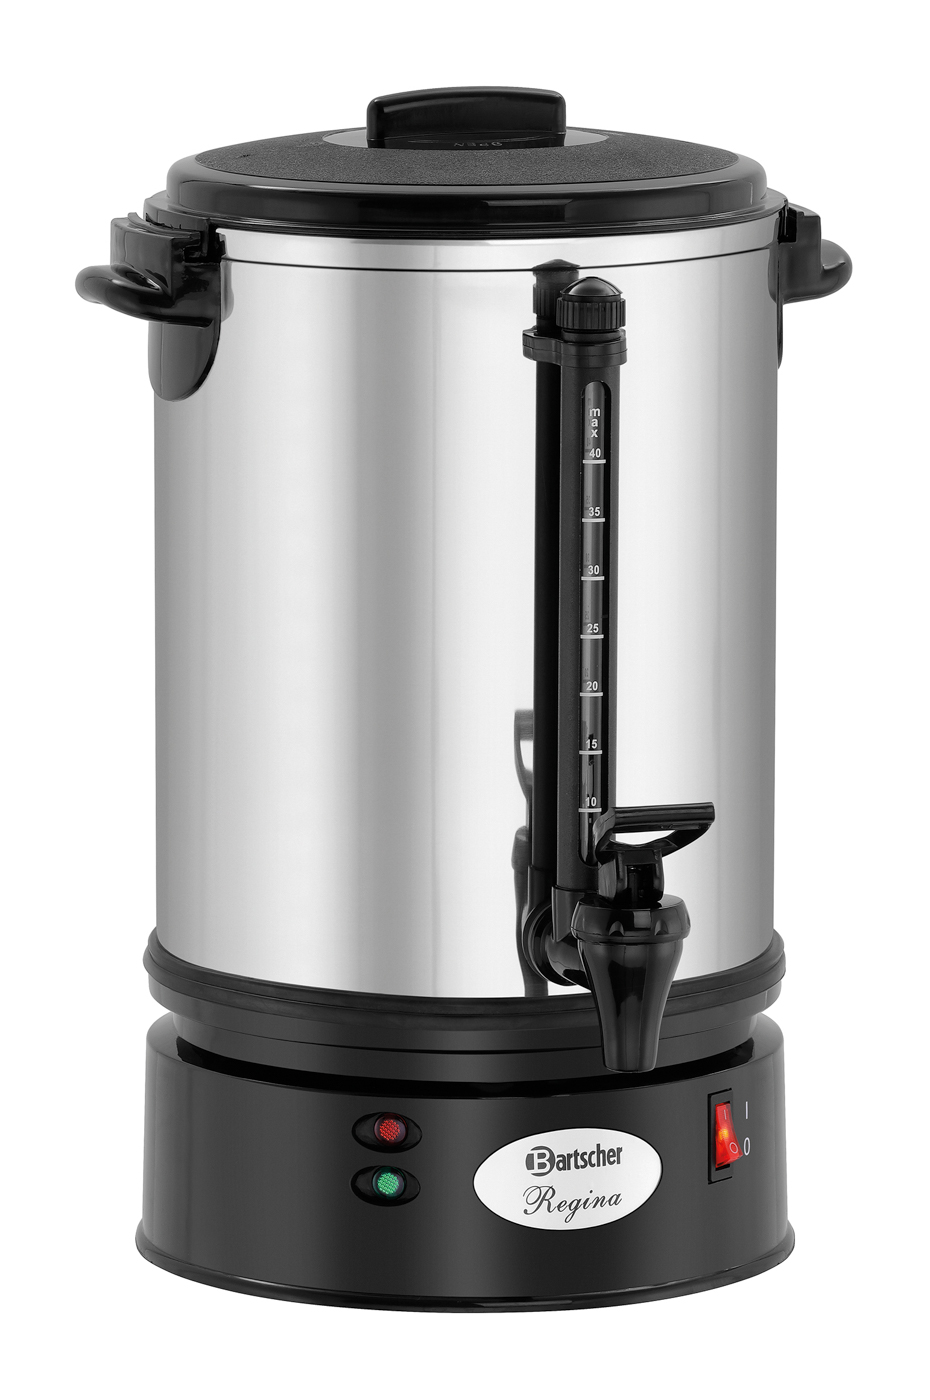 Bartscher Kaffeemaschine Regina Plus 40 | Inhalt: 6,8 Liter | Maße: 22 x 22 x 415 cm. Gewicht: 3,3 kg